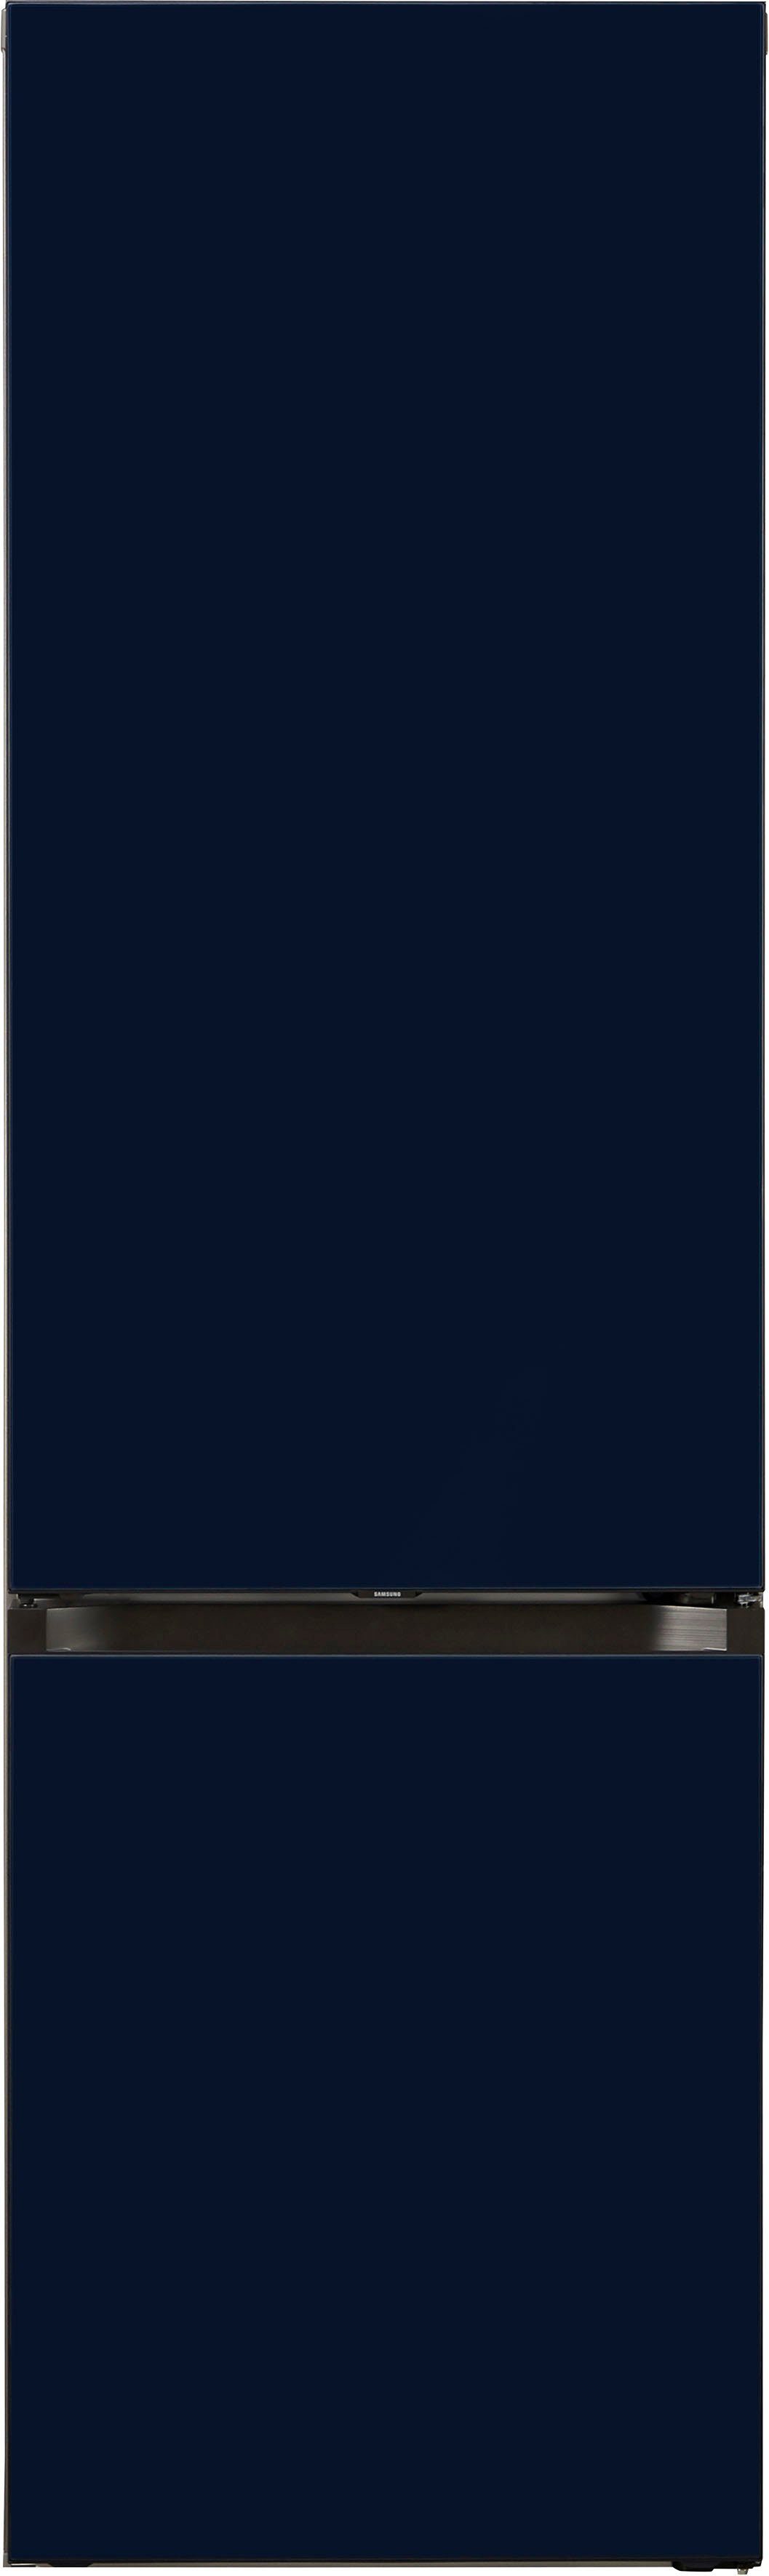 Samsung hoch, breit Bespoke cm cm 203 59,5 Kühl-/Gefrierkombination RL38A6B6C41,